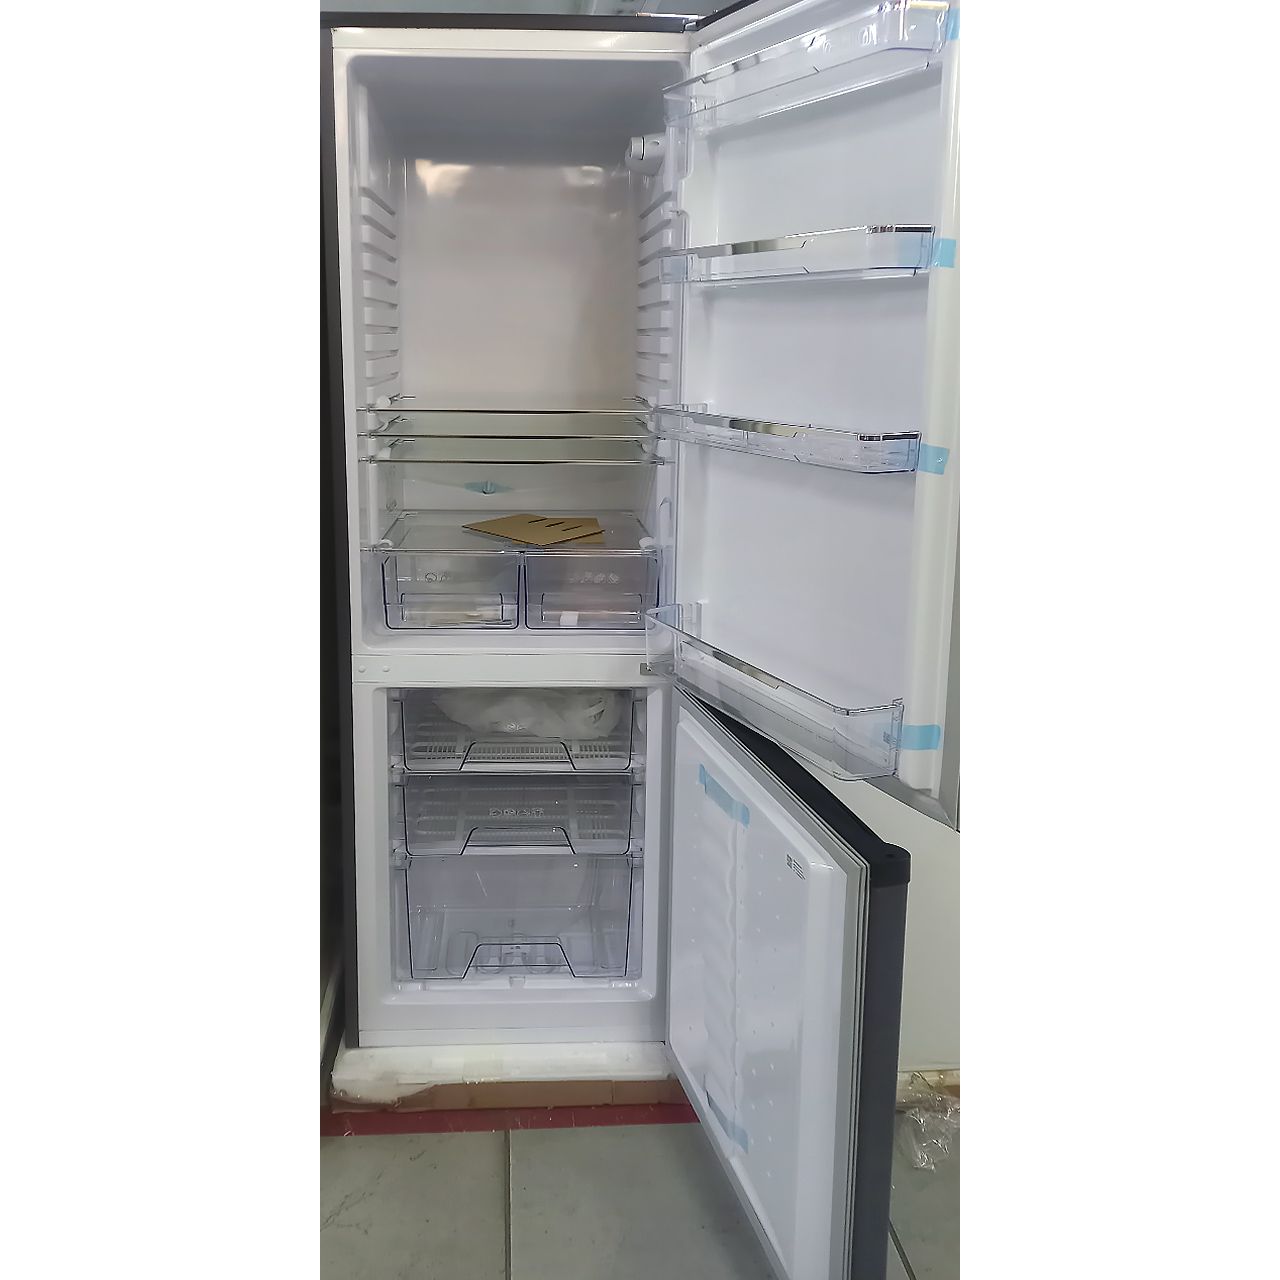 Холодильник двухкамерный Artel на 248 литров